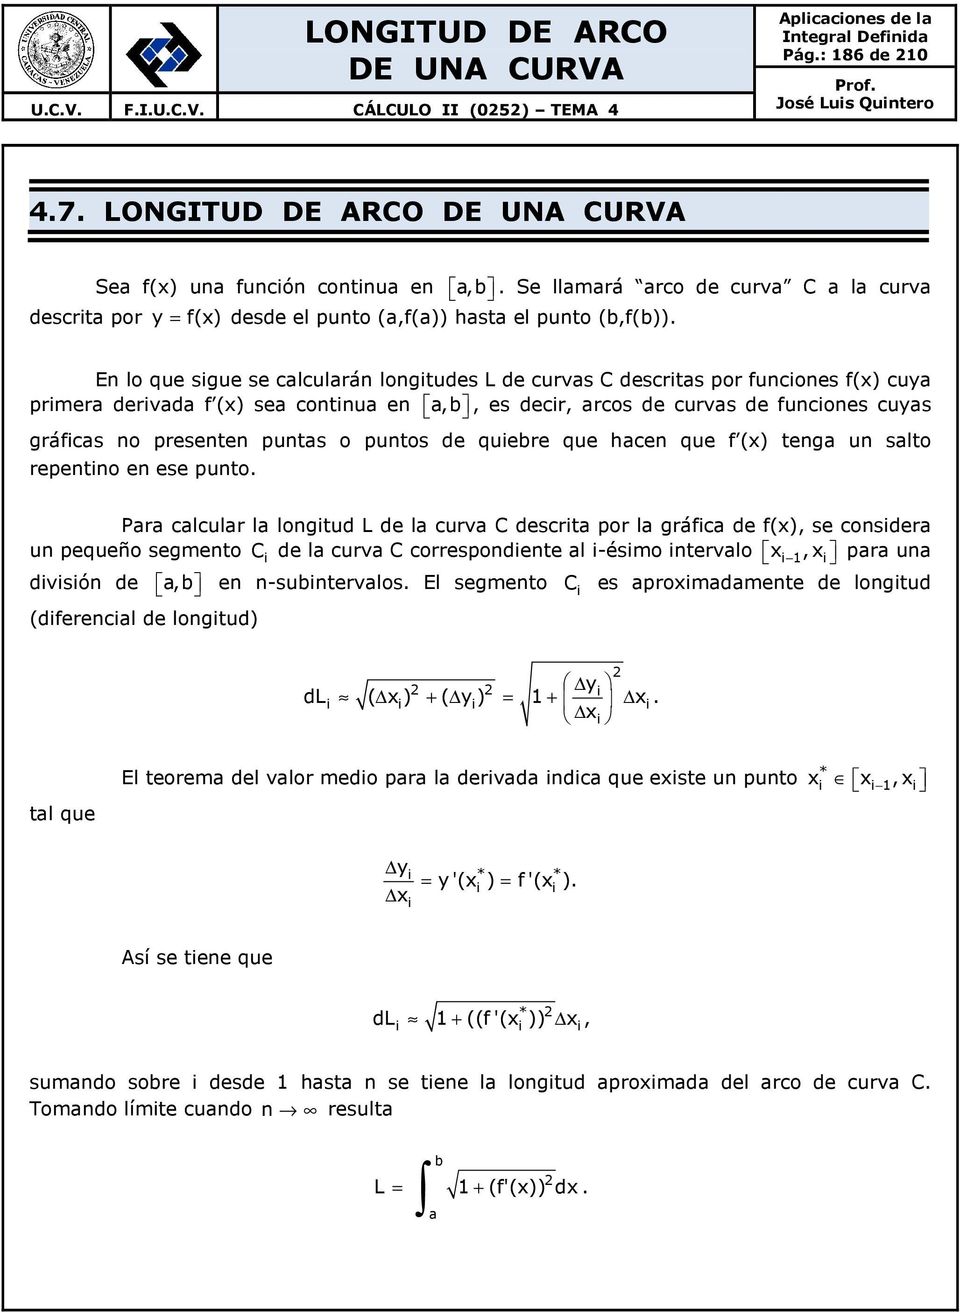 En lo que sigue se calcularán longitudes L de curvas C descritas por funciones f(x) cuya primera derivada f (x) sea continua en a,b, es decir, arcos de curvas de funciones cuyas gráficas no presenten